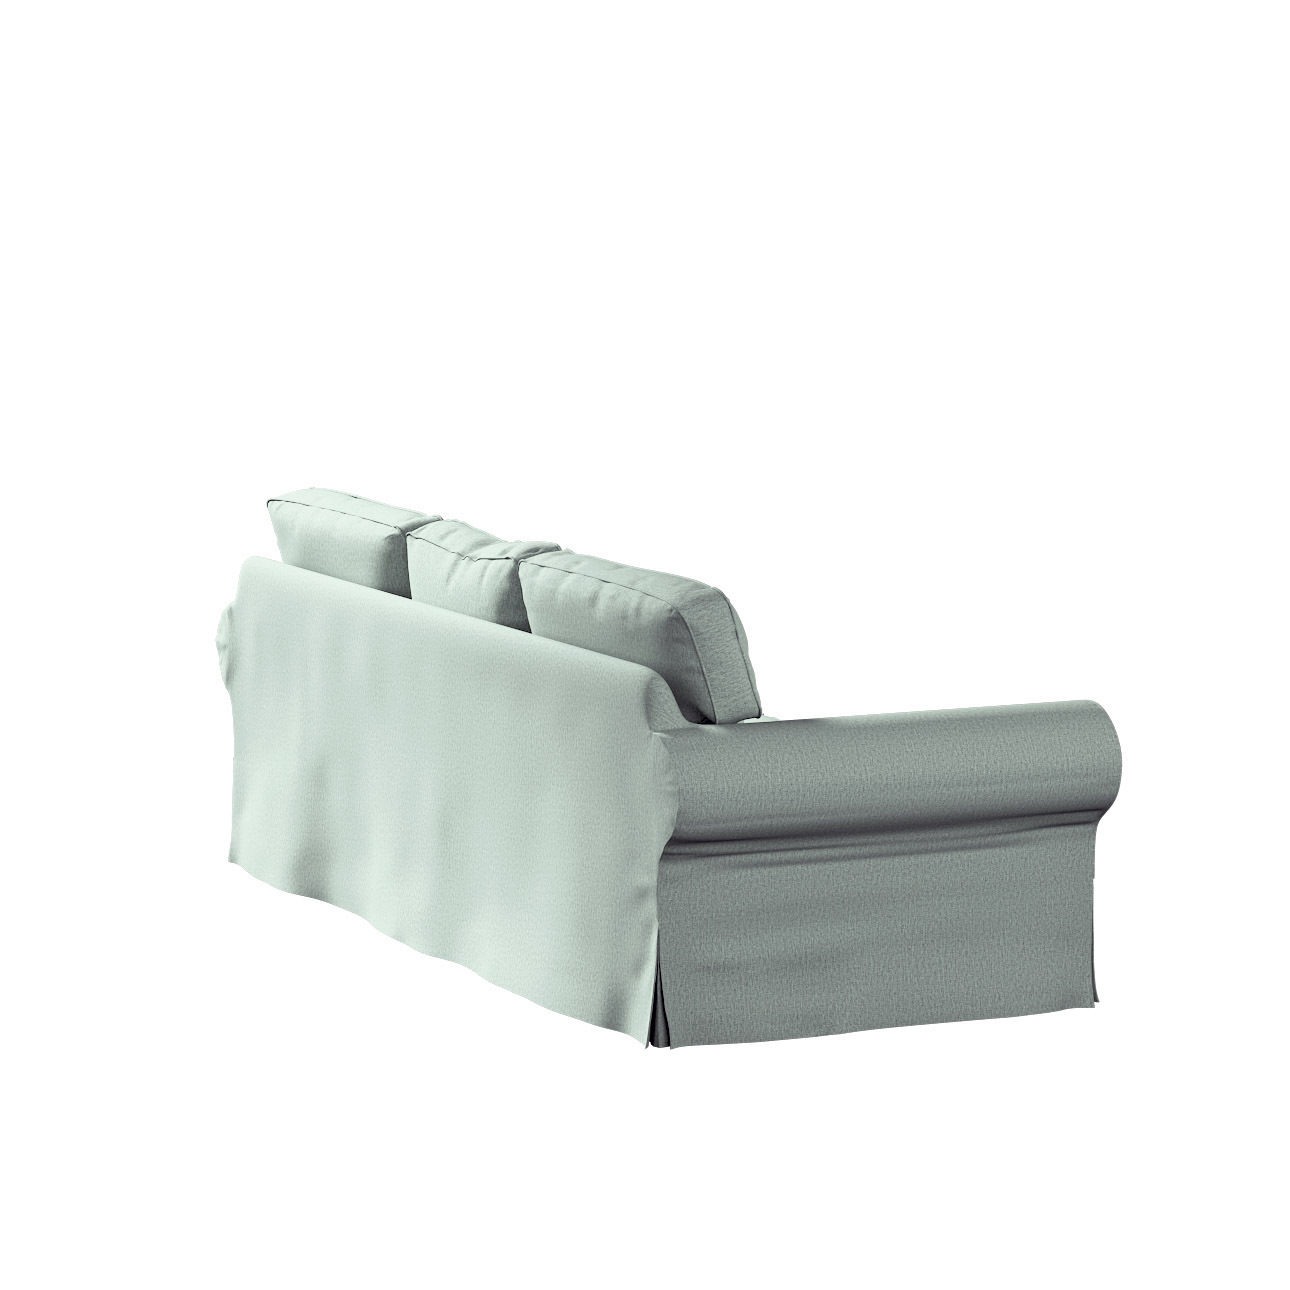 Bezug für Ektorp 3-Sitzer Schlafsofa, neues Modell (2013), eukalyptusgrün, günstig online kaufen